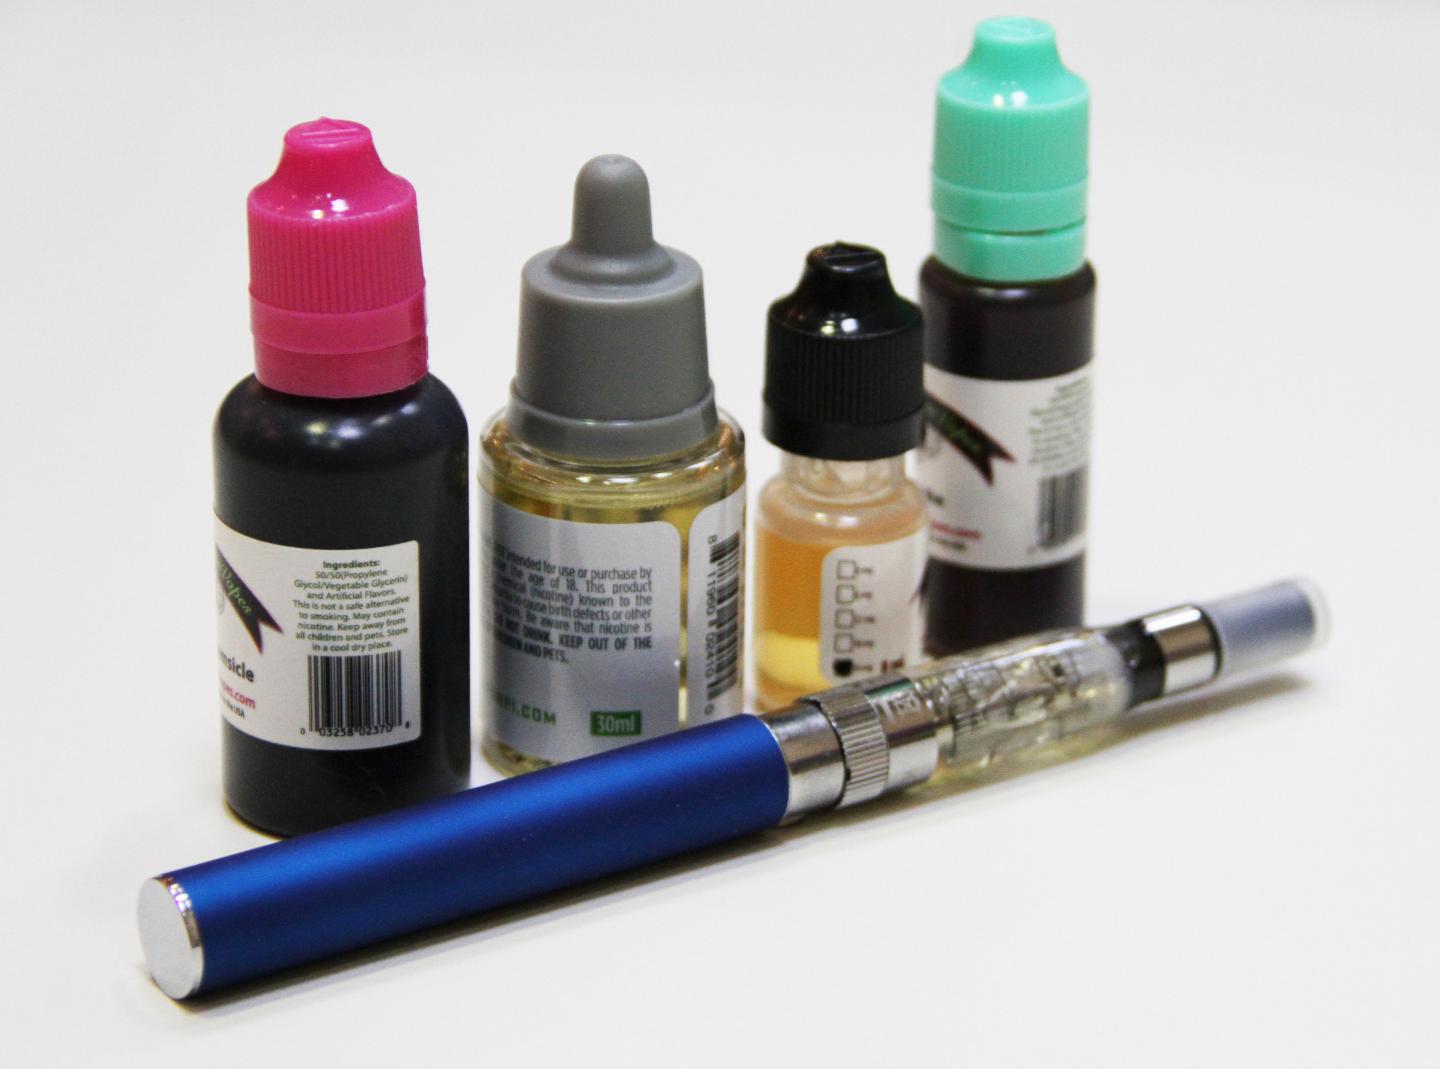 Liquid Nicotine Used in e-Cigarettes Still Dangerous To Children